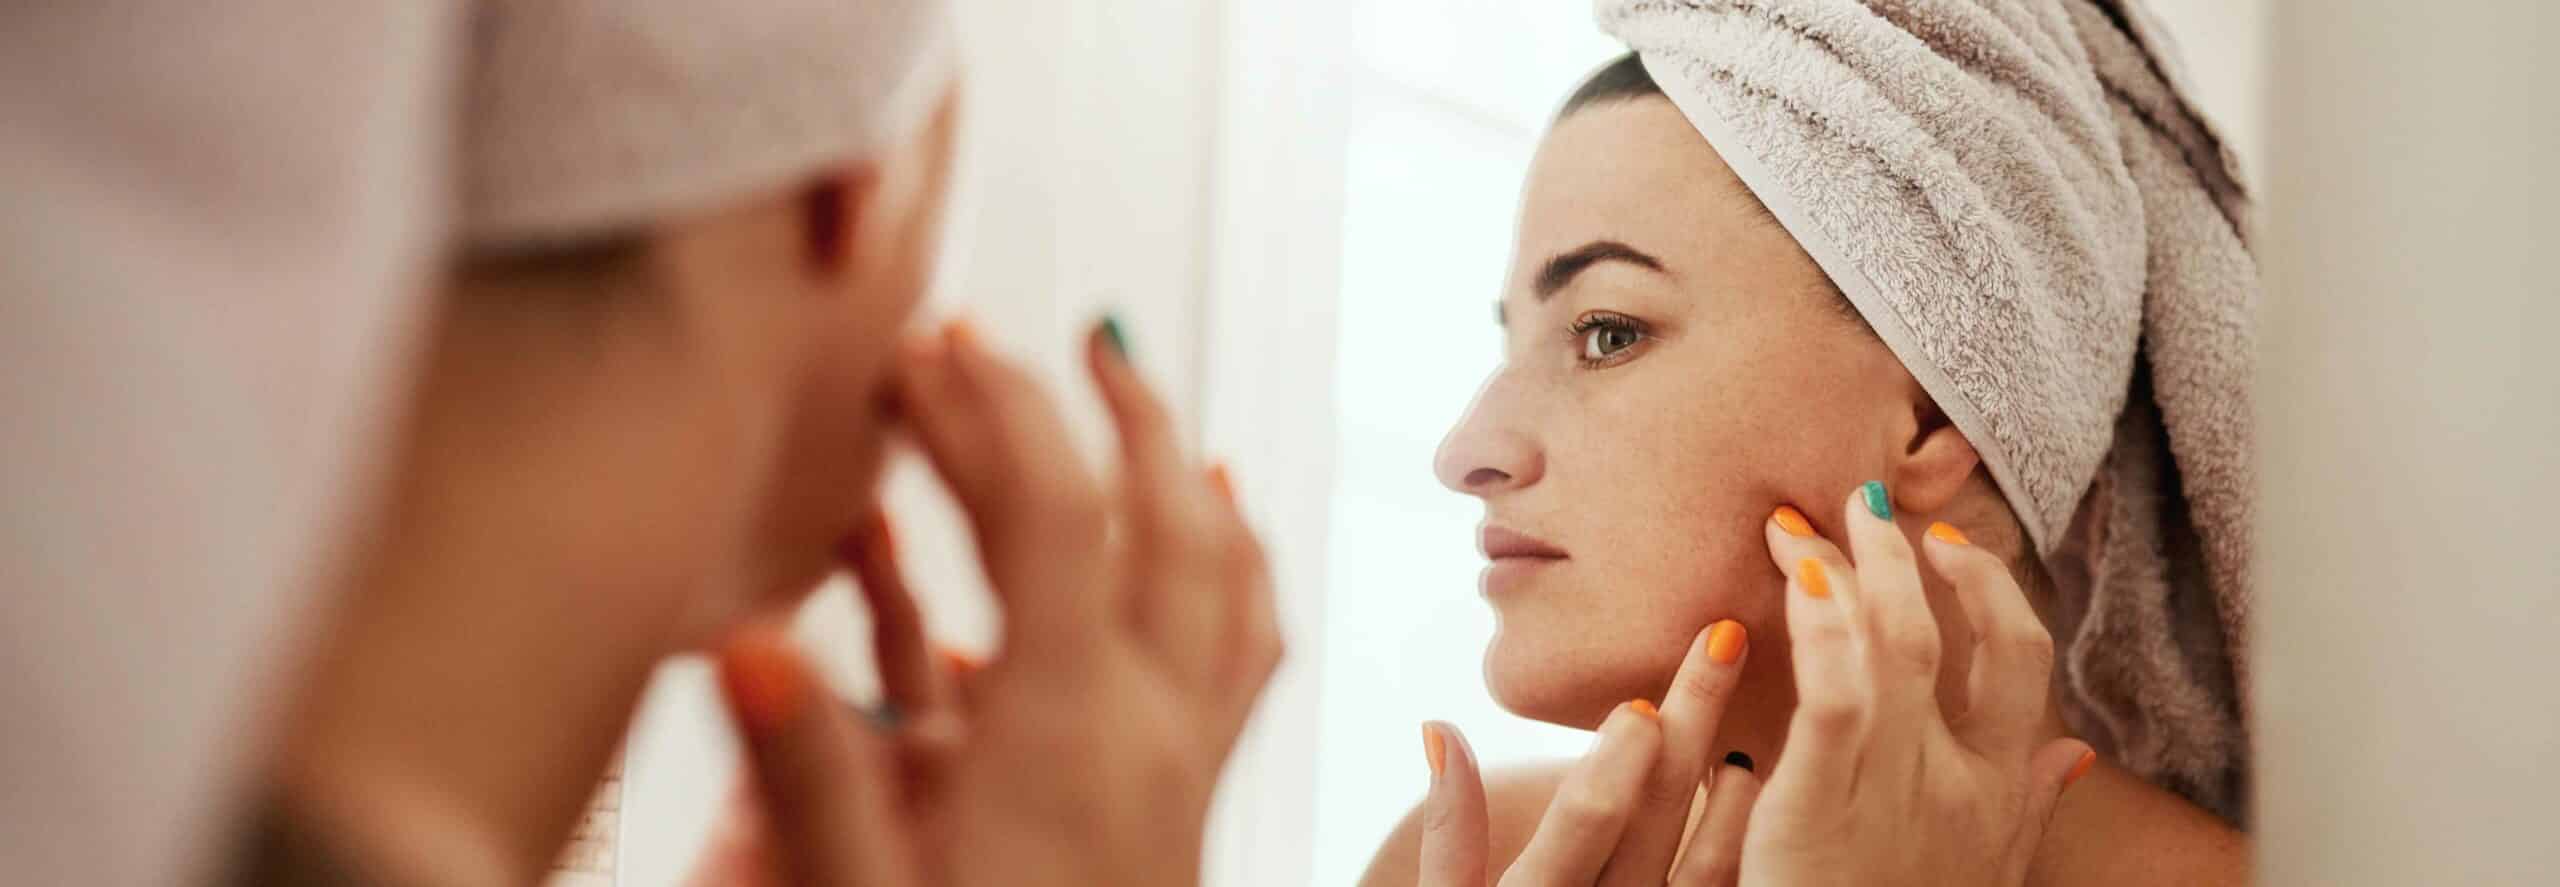 Traiter l’acné avec le peeling | Dr Rivalier | Lyon